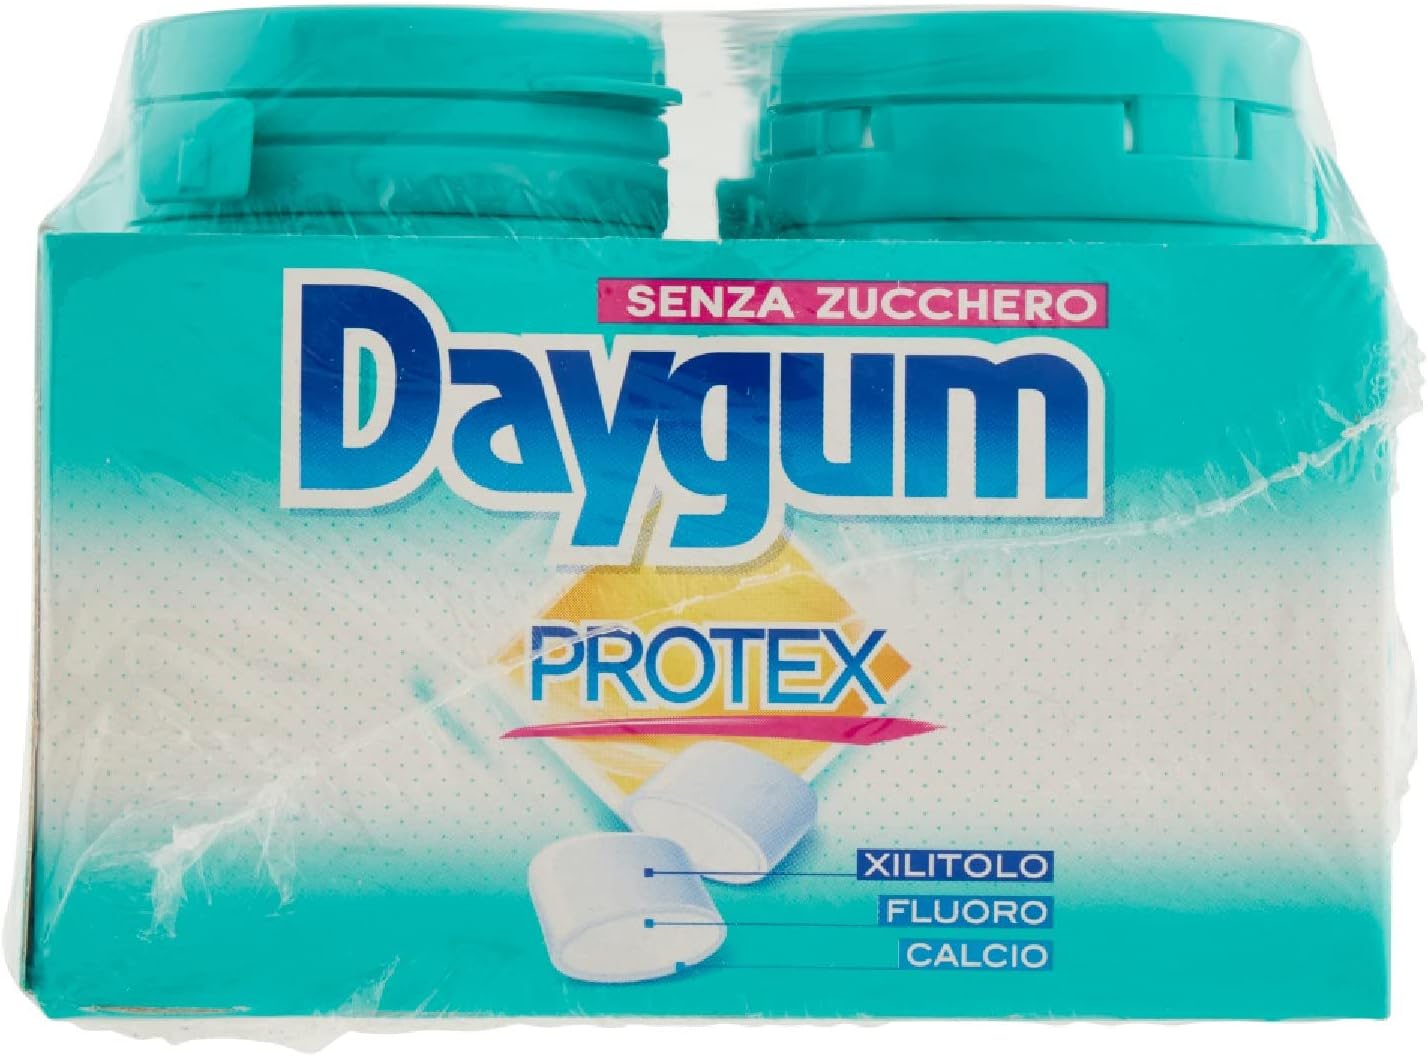 Daygum Protex Chewing Gum Senza Zucchero, Gusto Menta, Confezione da 6 Mini Barattoli, 46 Gomme da Masticare Ciascuno